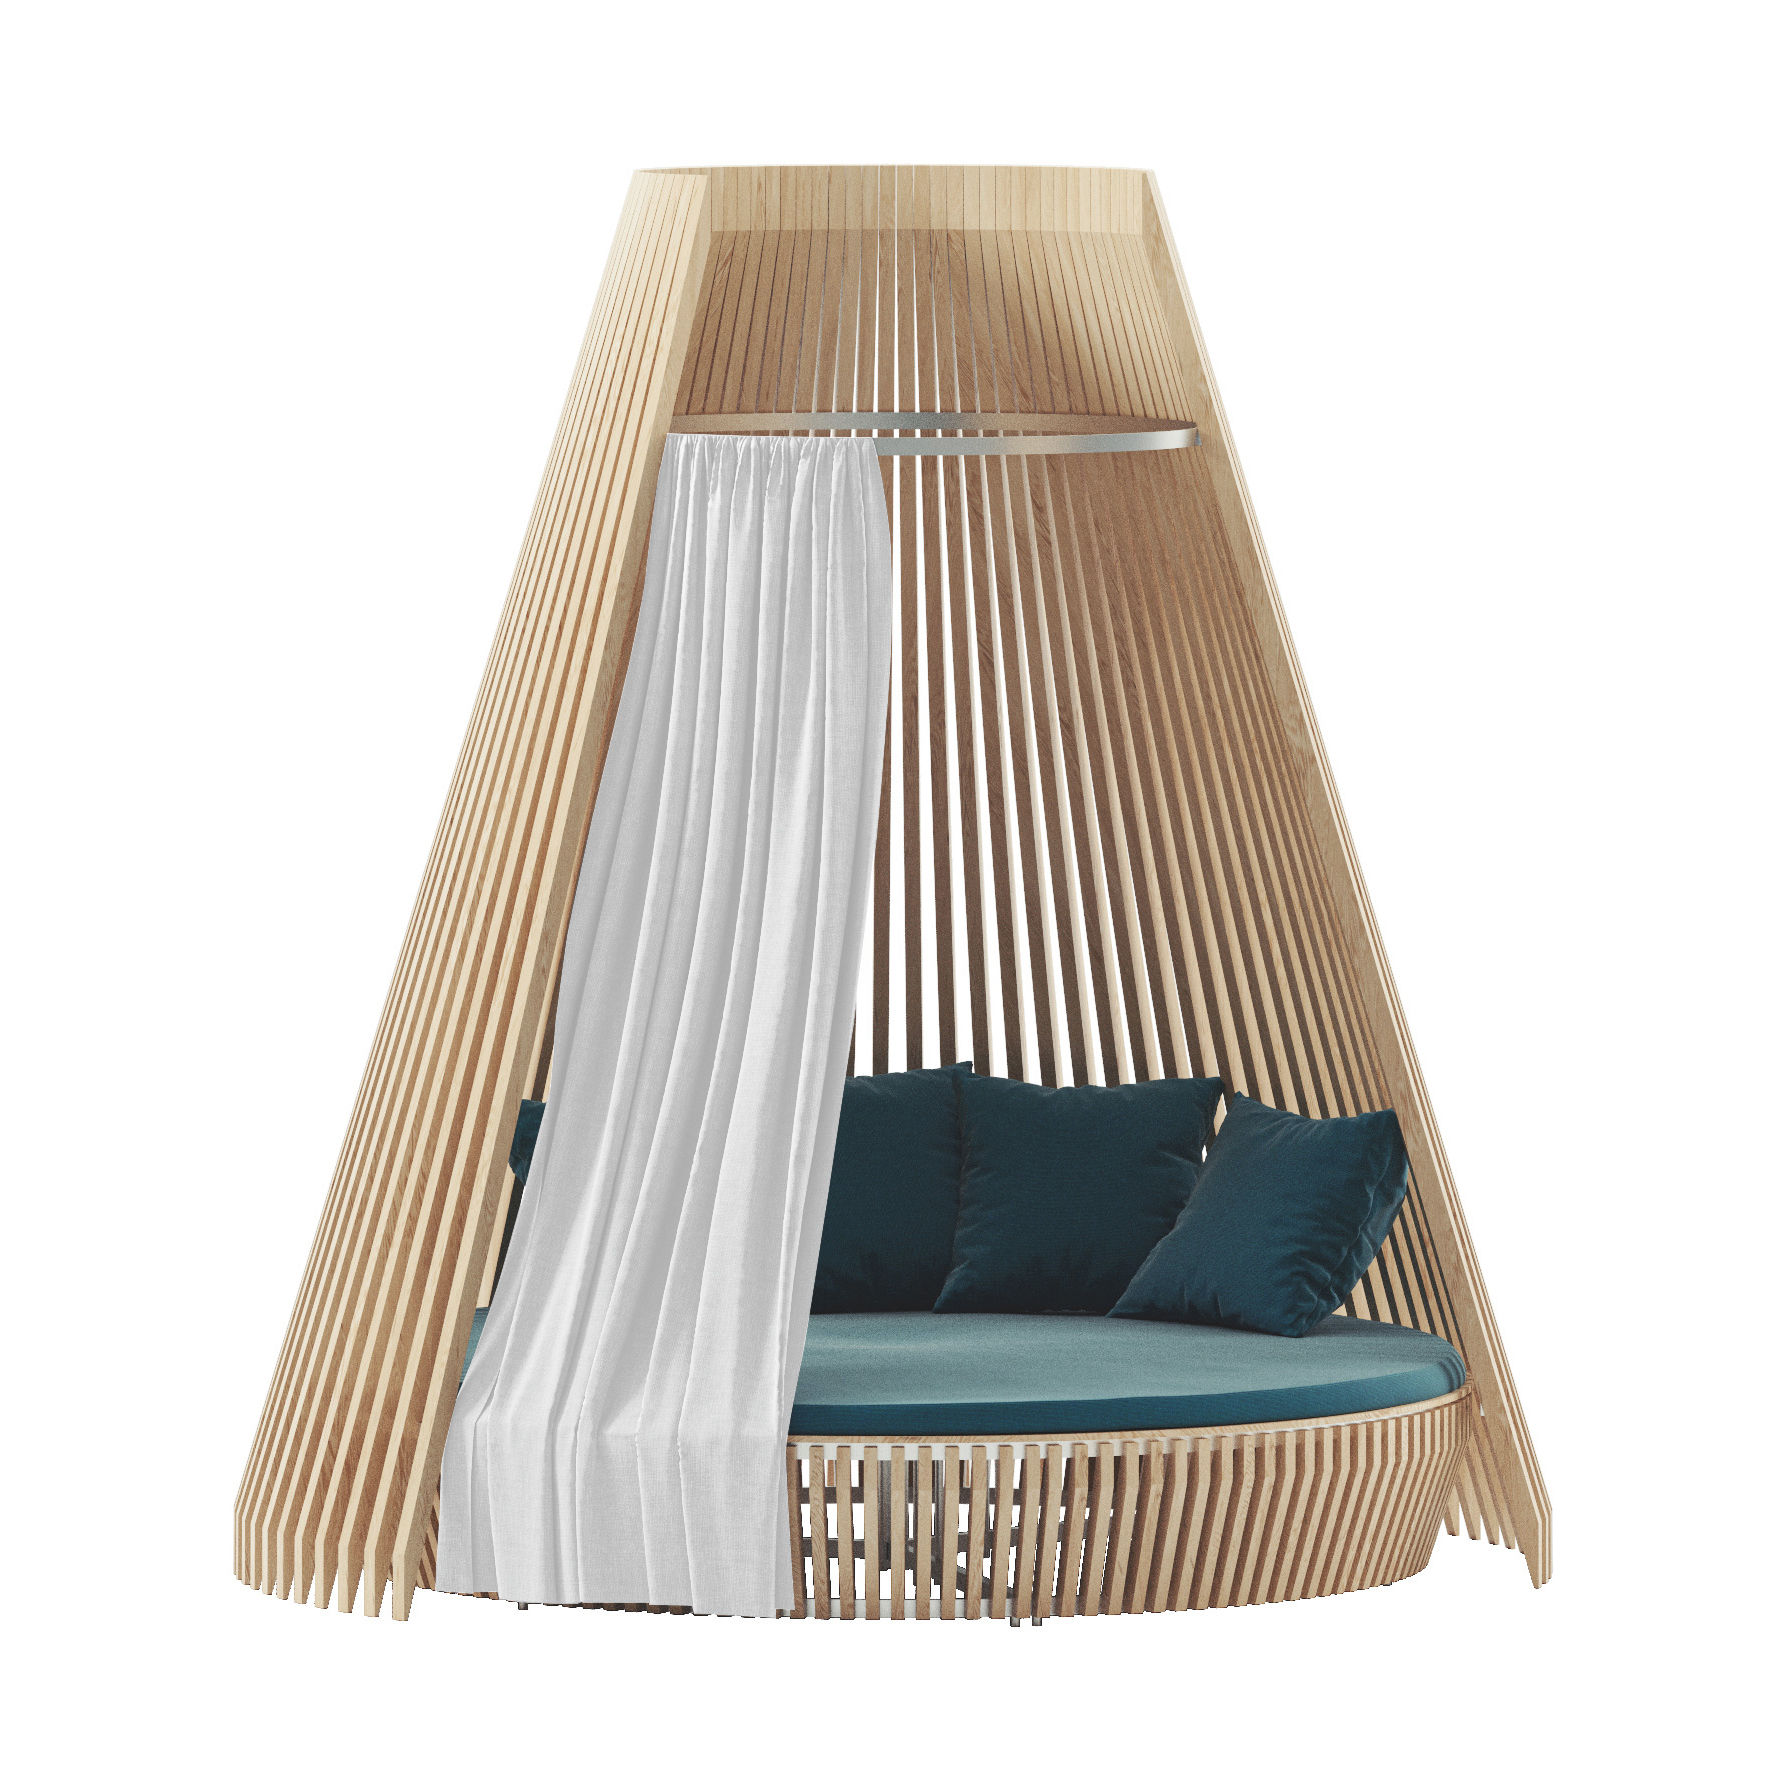 Rideau / Pour canapé rond Hut - Ethimo 280 x 265 cm blanc en tissu